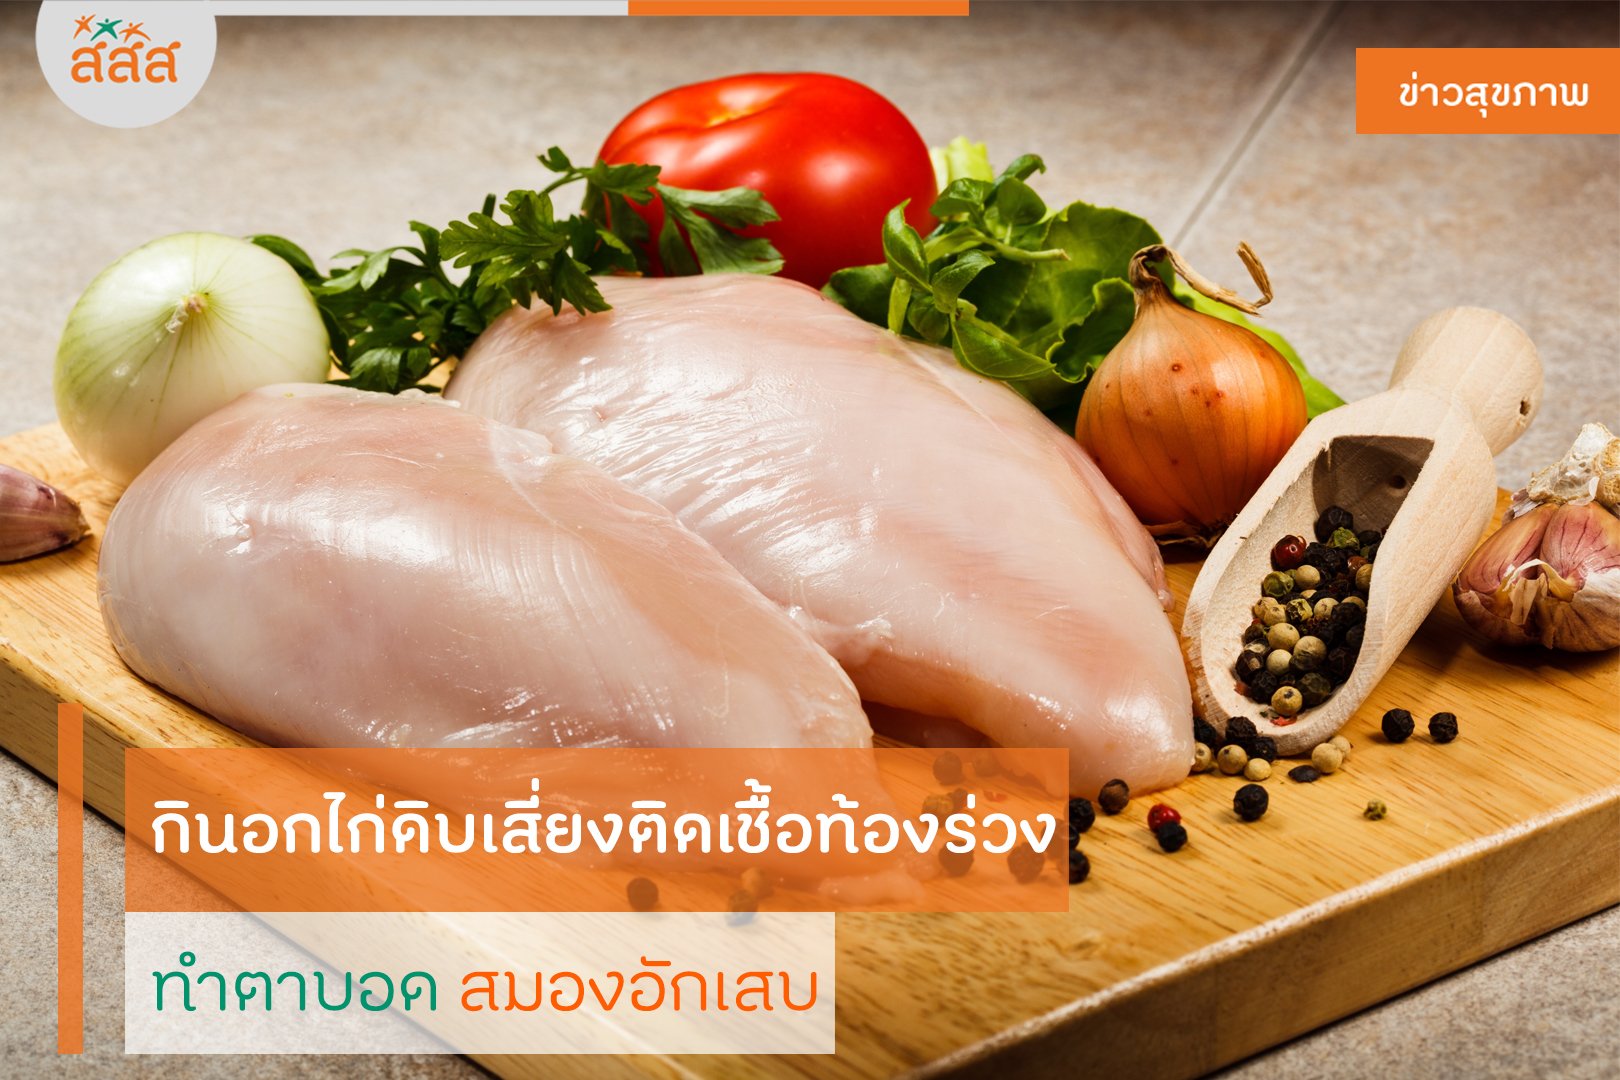 กินอกไก่ดิบเสี่ยงติดเชื้อท้องร่วง ทำตาบอดสมองอักเสบ  thaihealth